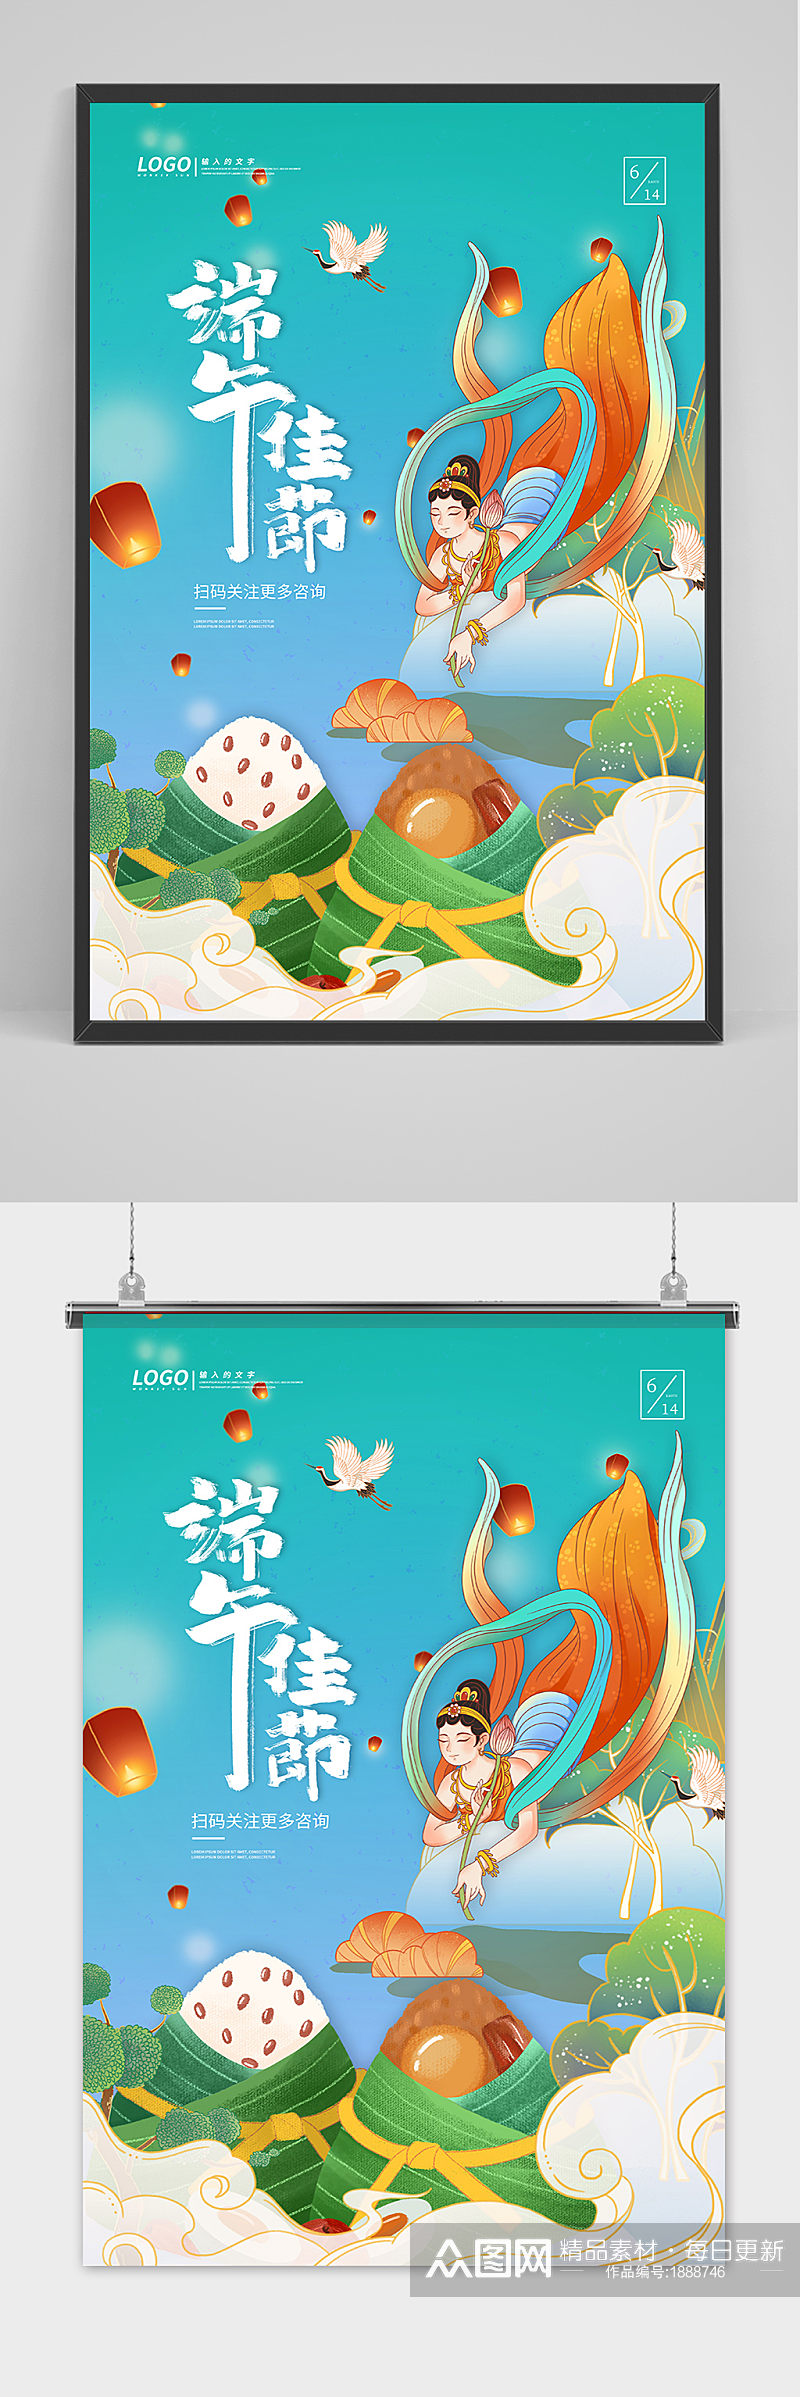 绿色清爽中国风端午节海报素材